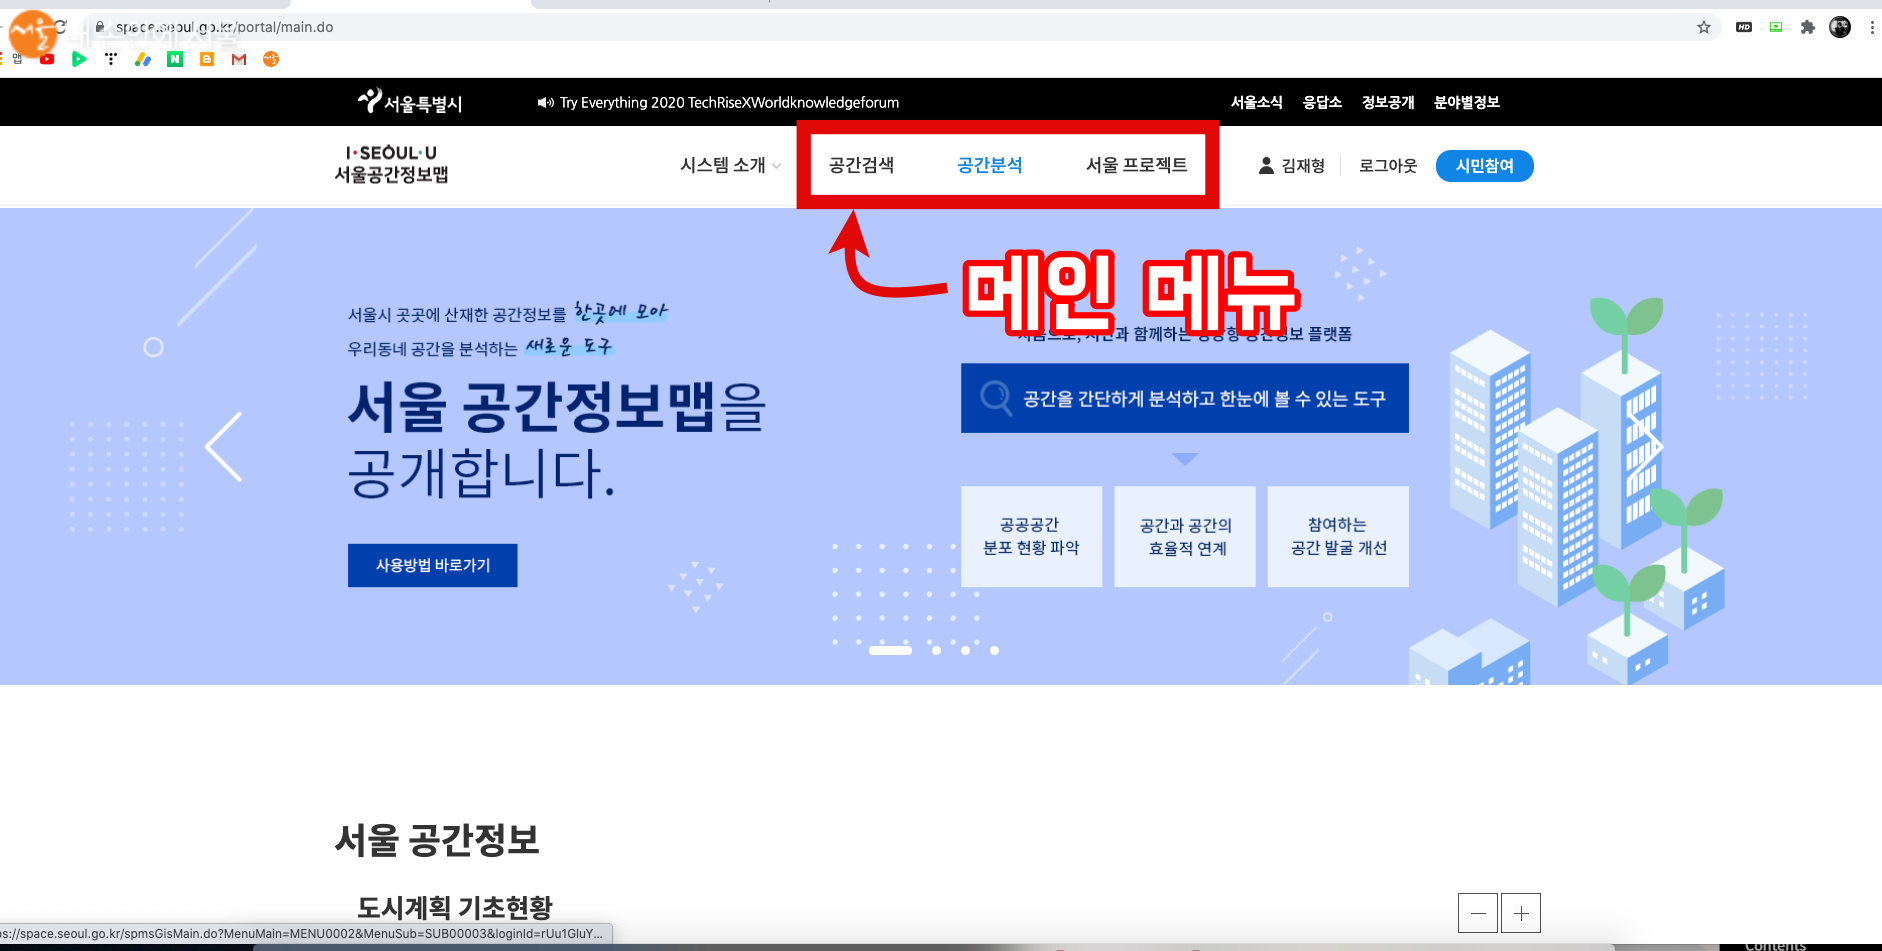 서울 공간정보맵에서 가장 많이 이용할 메뉴들이다